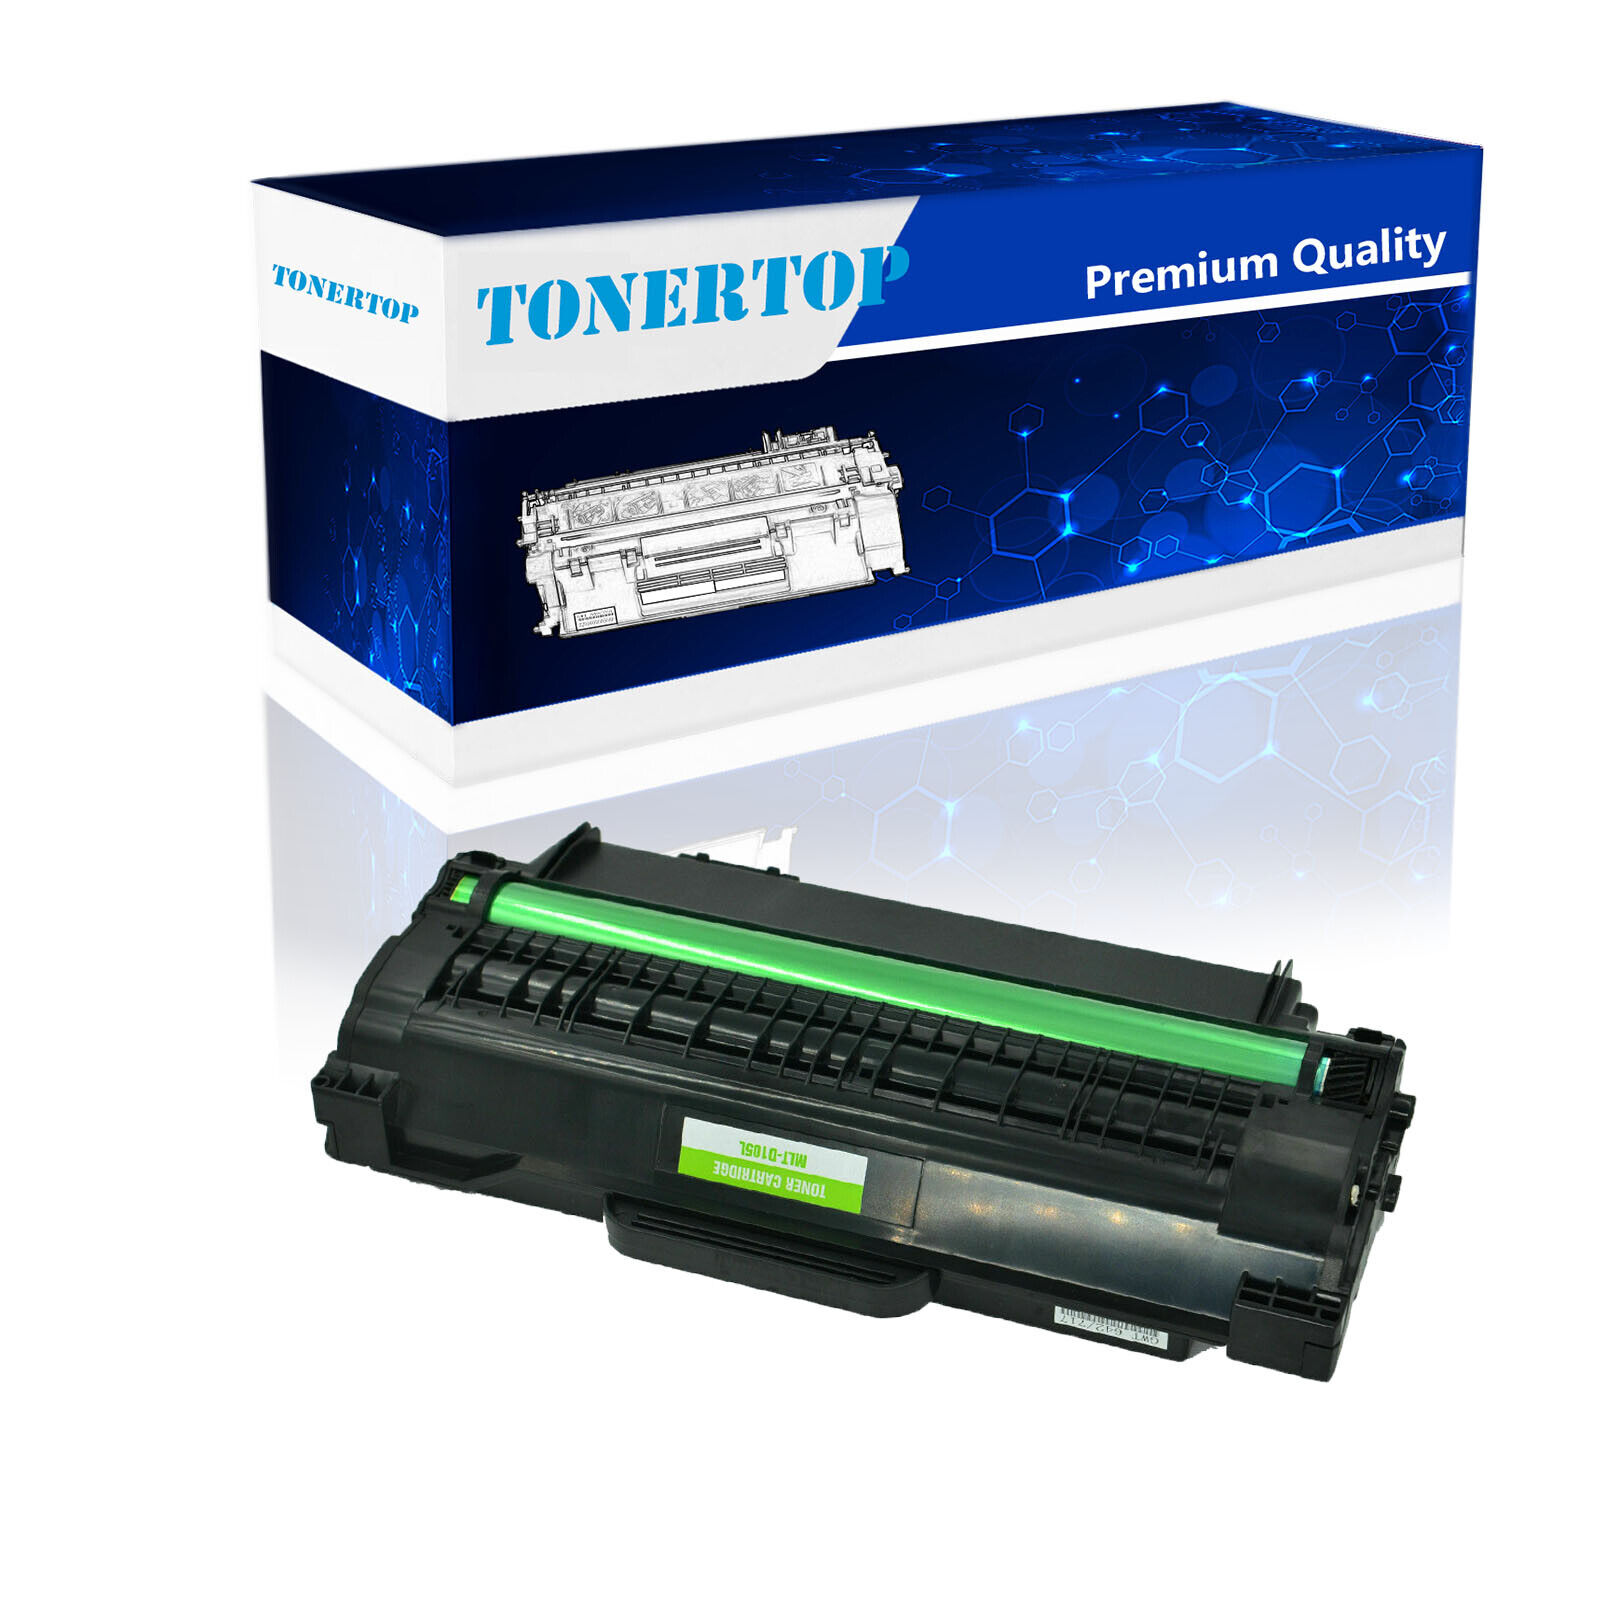 1 Pack MLT-D105L Black Toner Cartridge Compatible For Samsung ML-2525 Printer